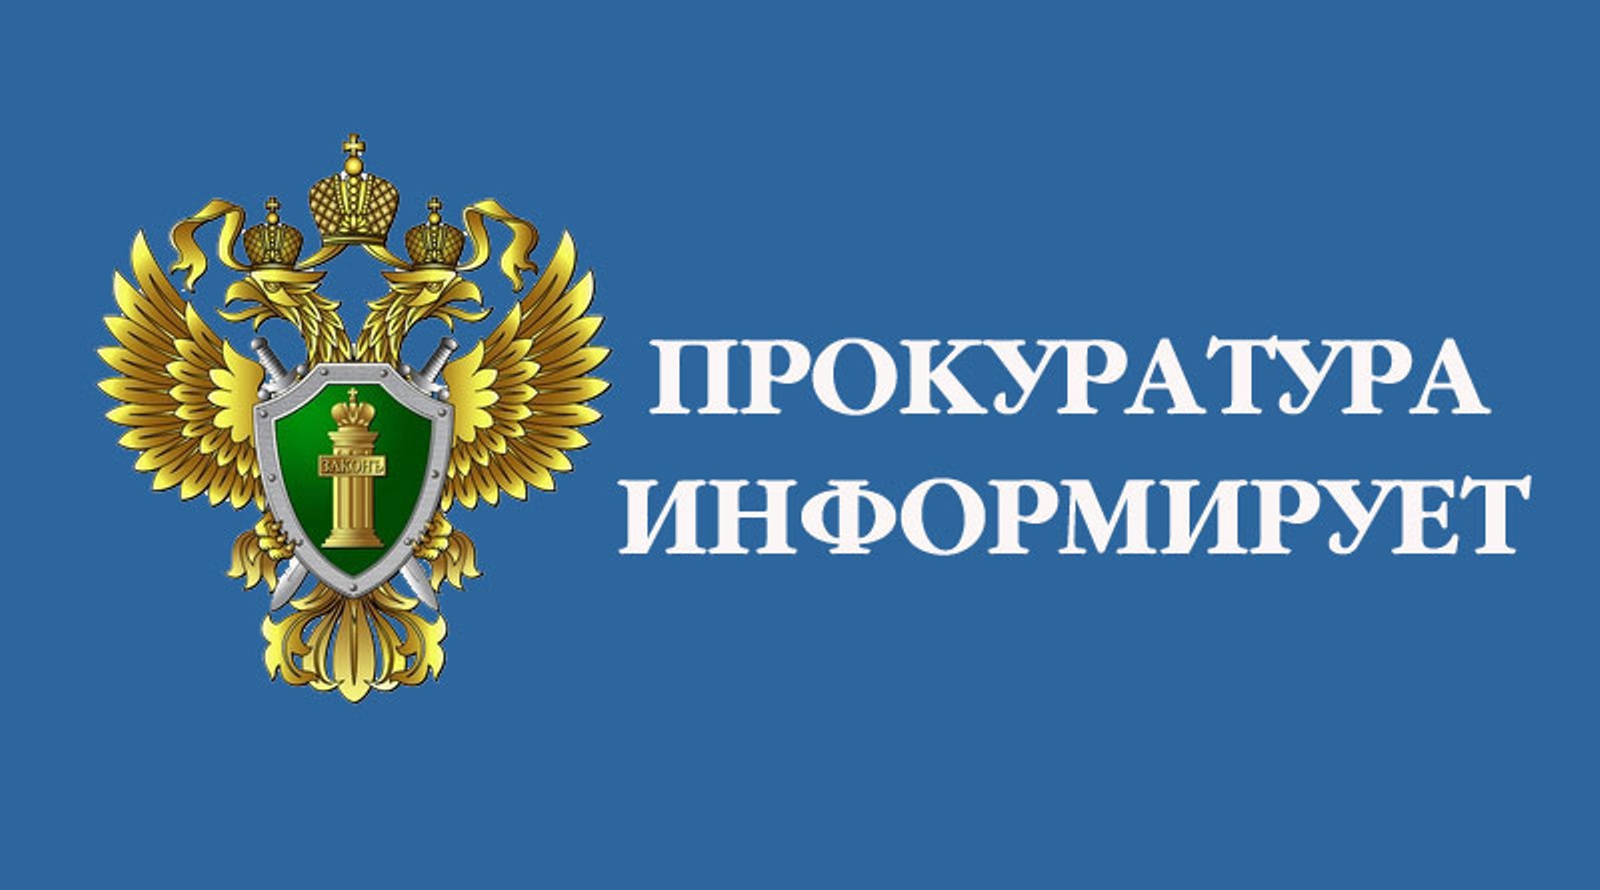 Прокуратура Большеигнатовского района провела проверку технического состояния автомобилей скорой медицинской помощи.